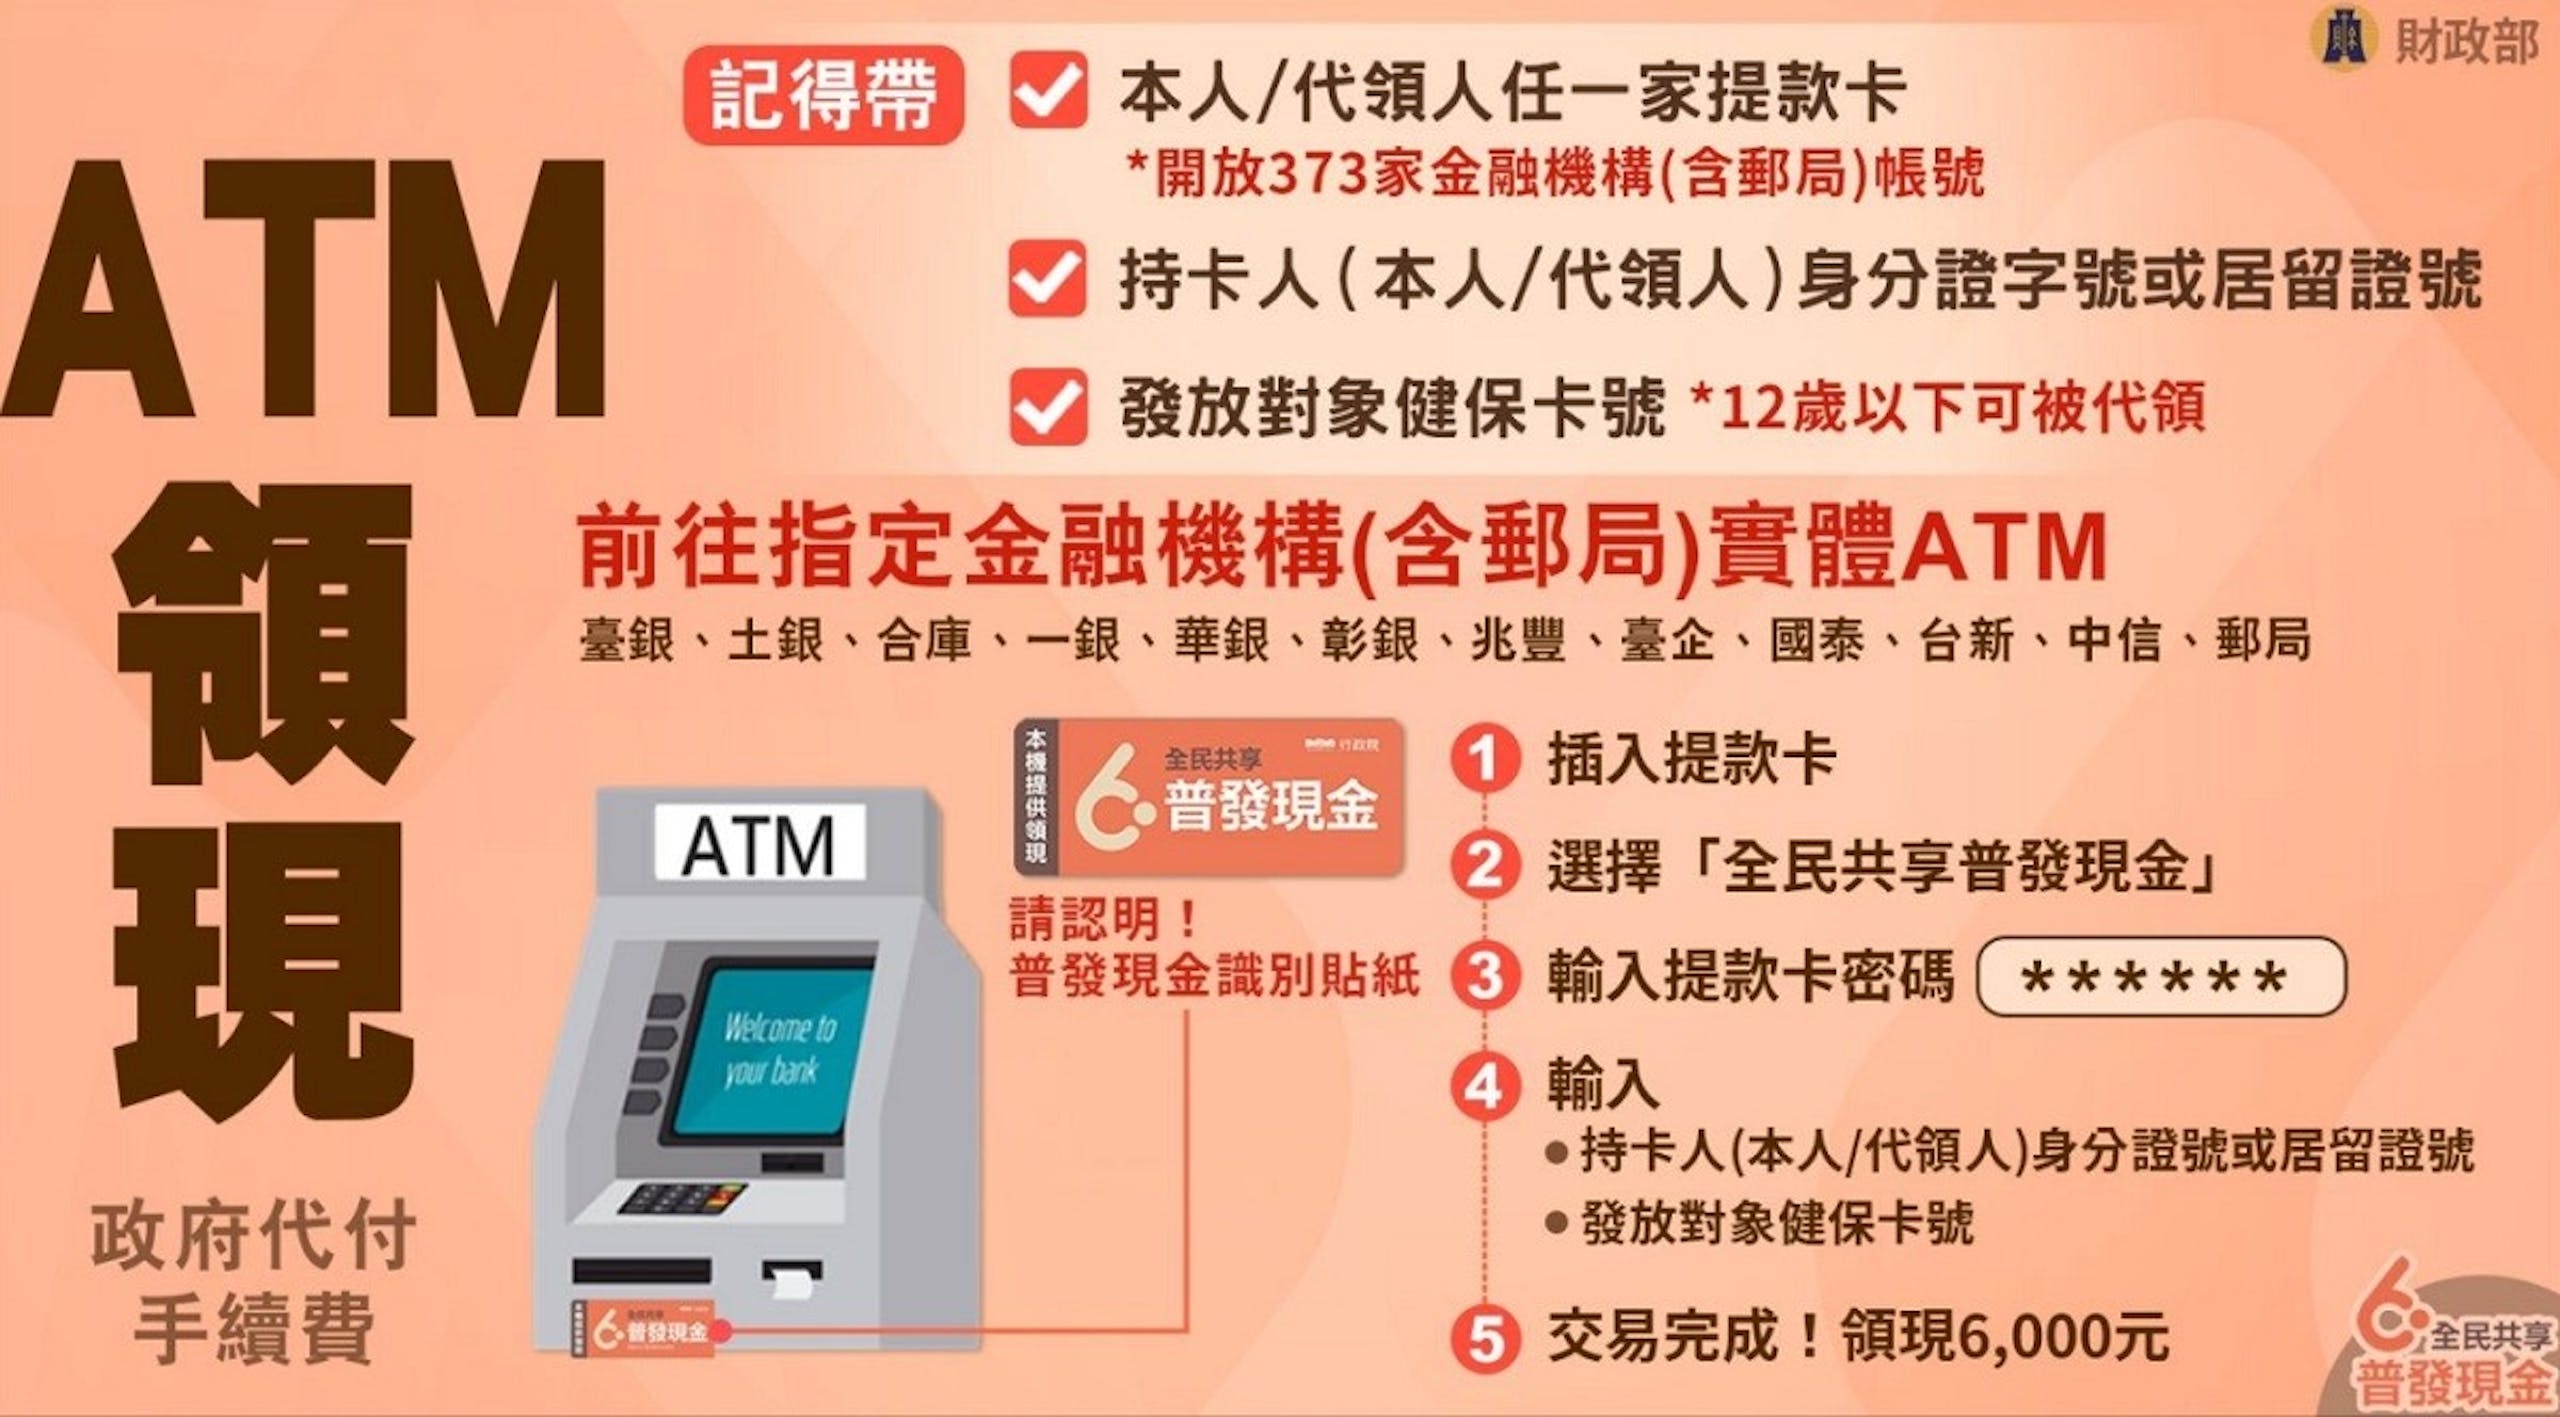 照片中提到了ATM、領、現，包含了照片、李柏坊、udn.com、下一個蘋果新聞、雅虎！台灣